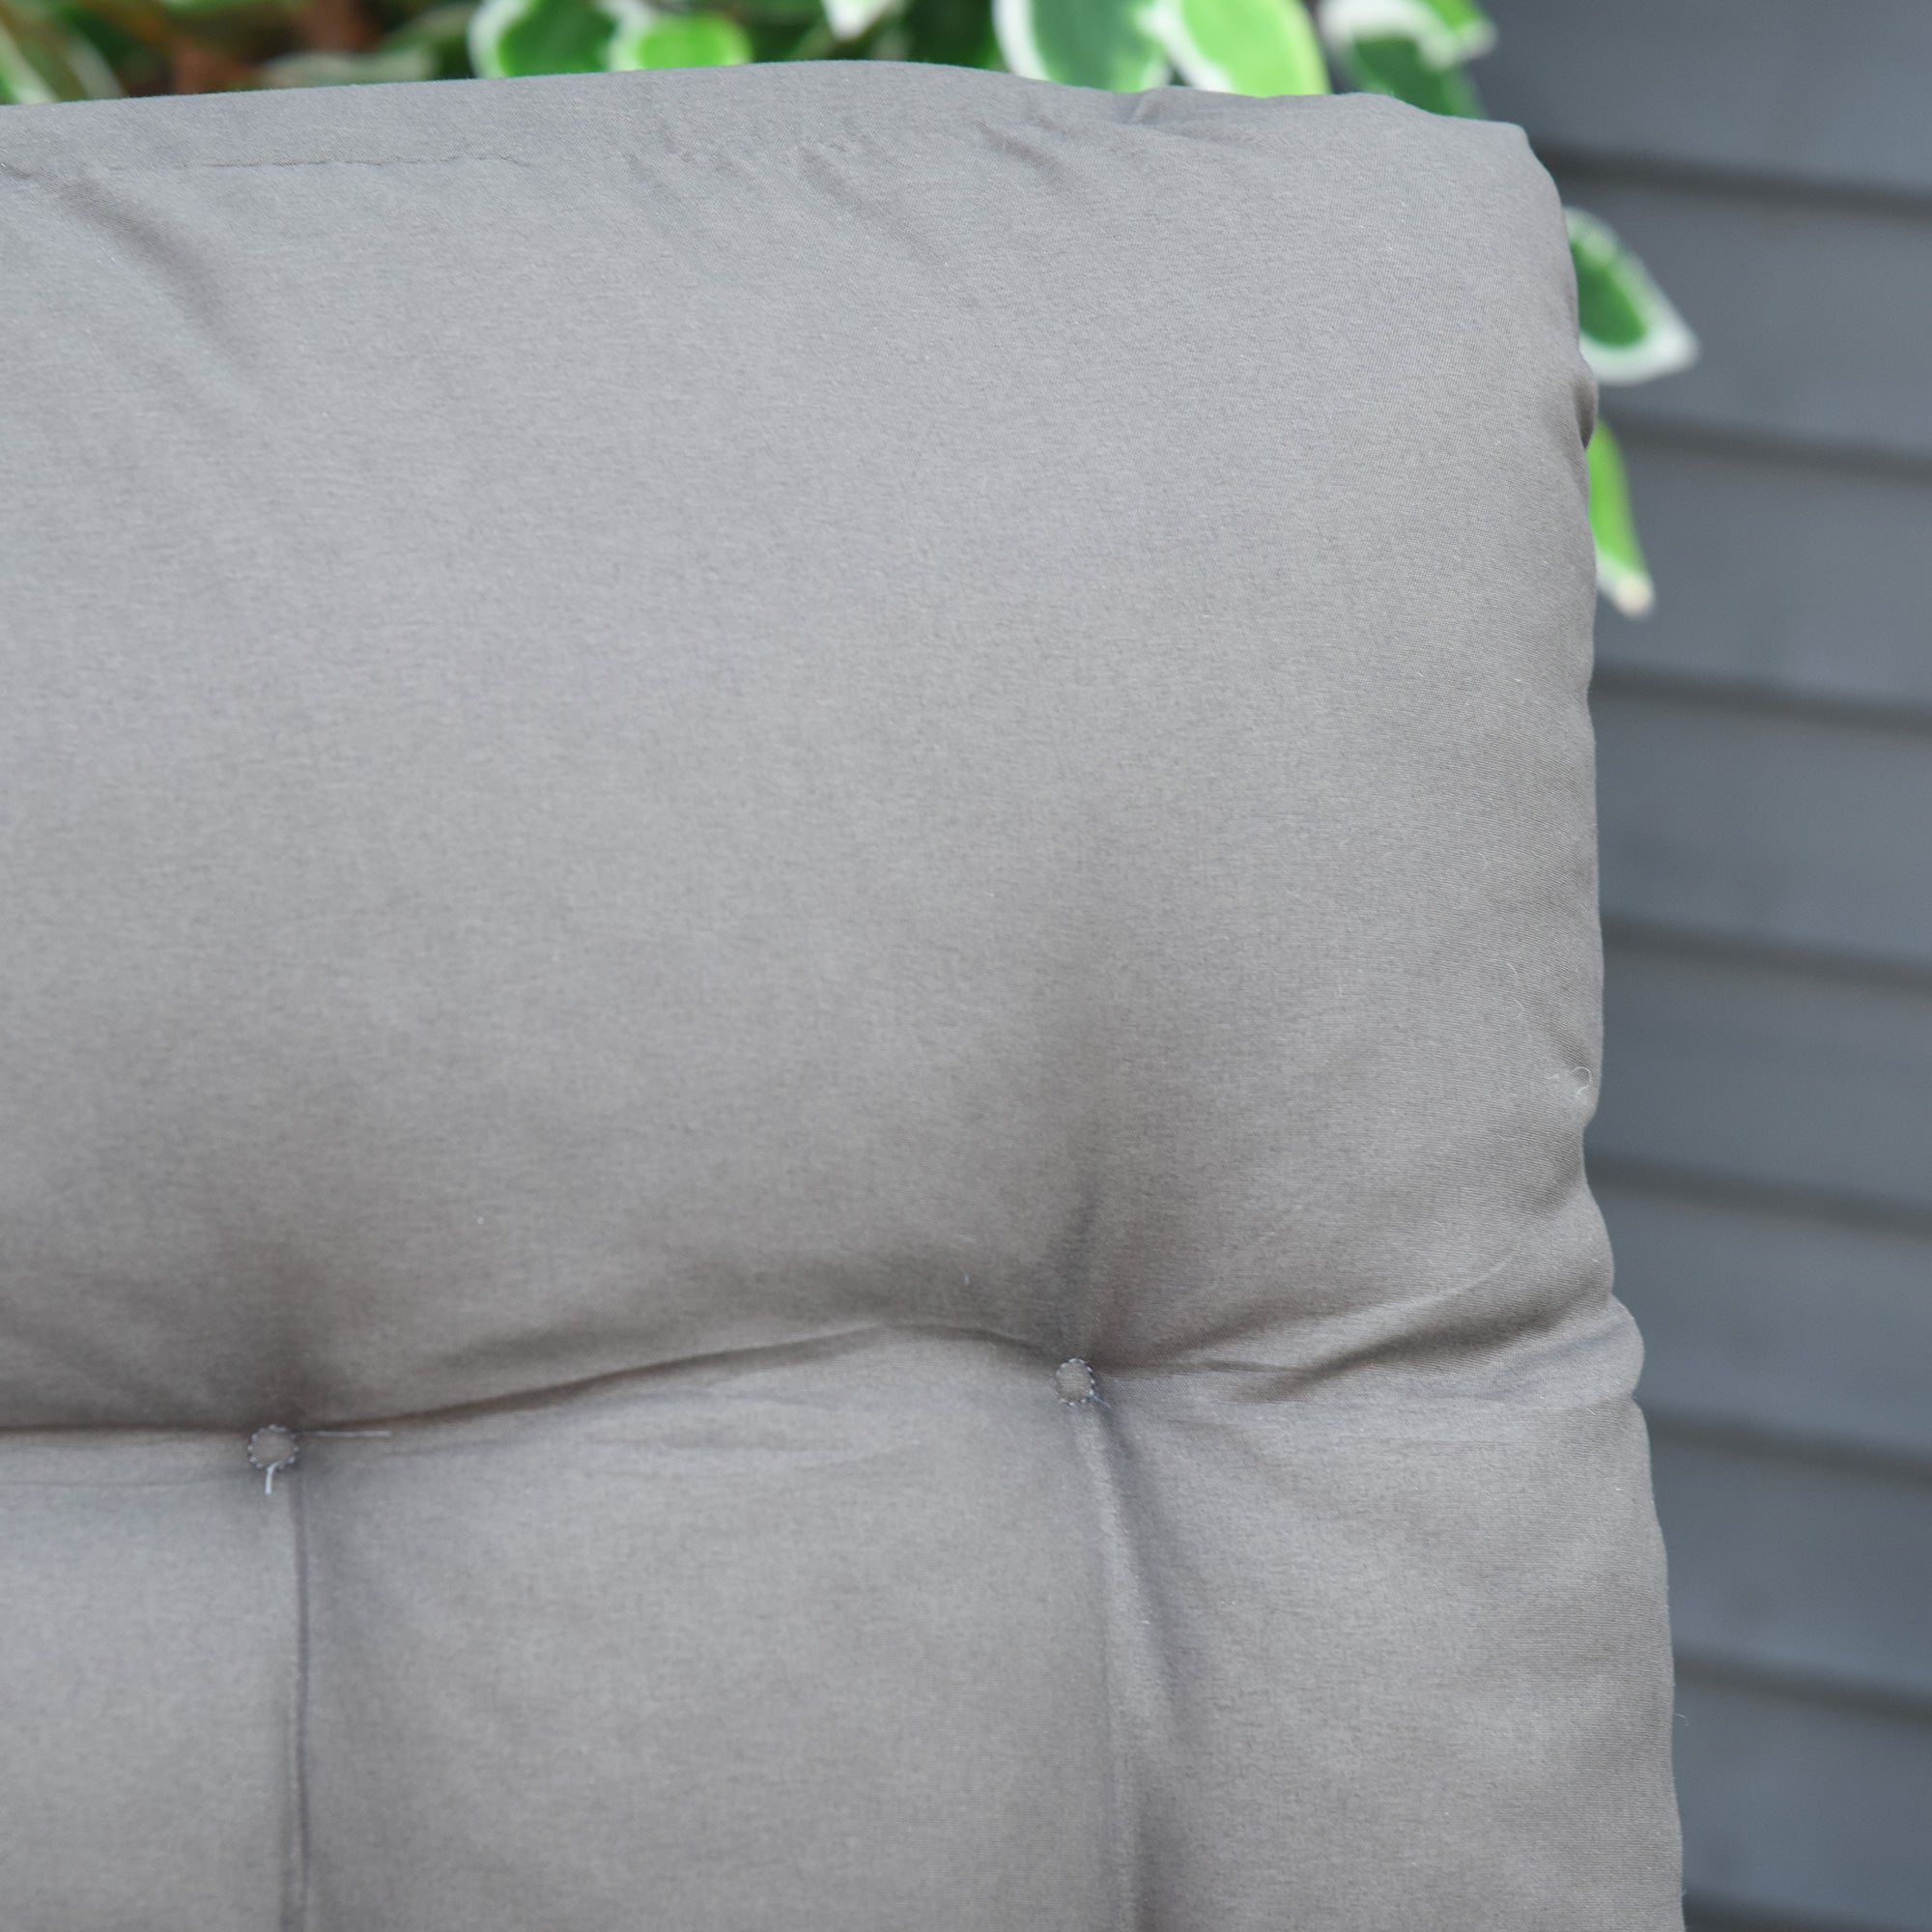 2 Pc Reclining Chair Garden Sun Lounger & Cushion Headrest Light Grey - Inspirely